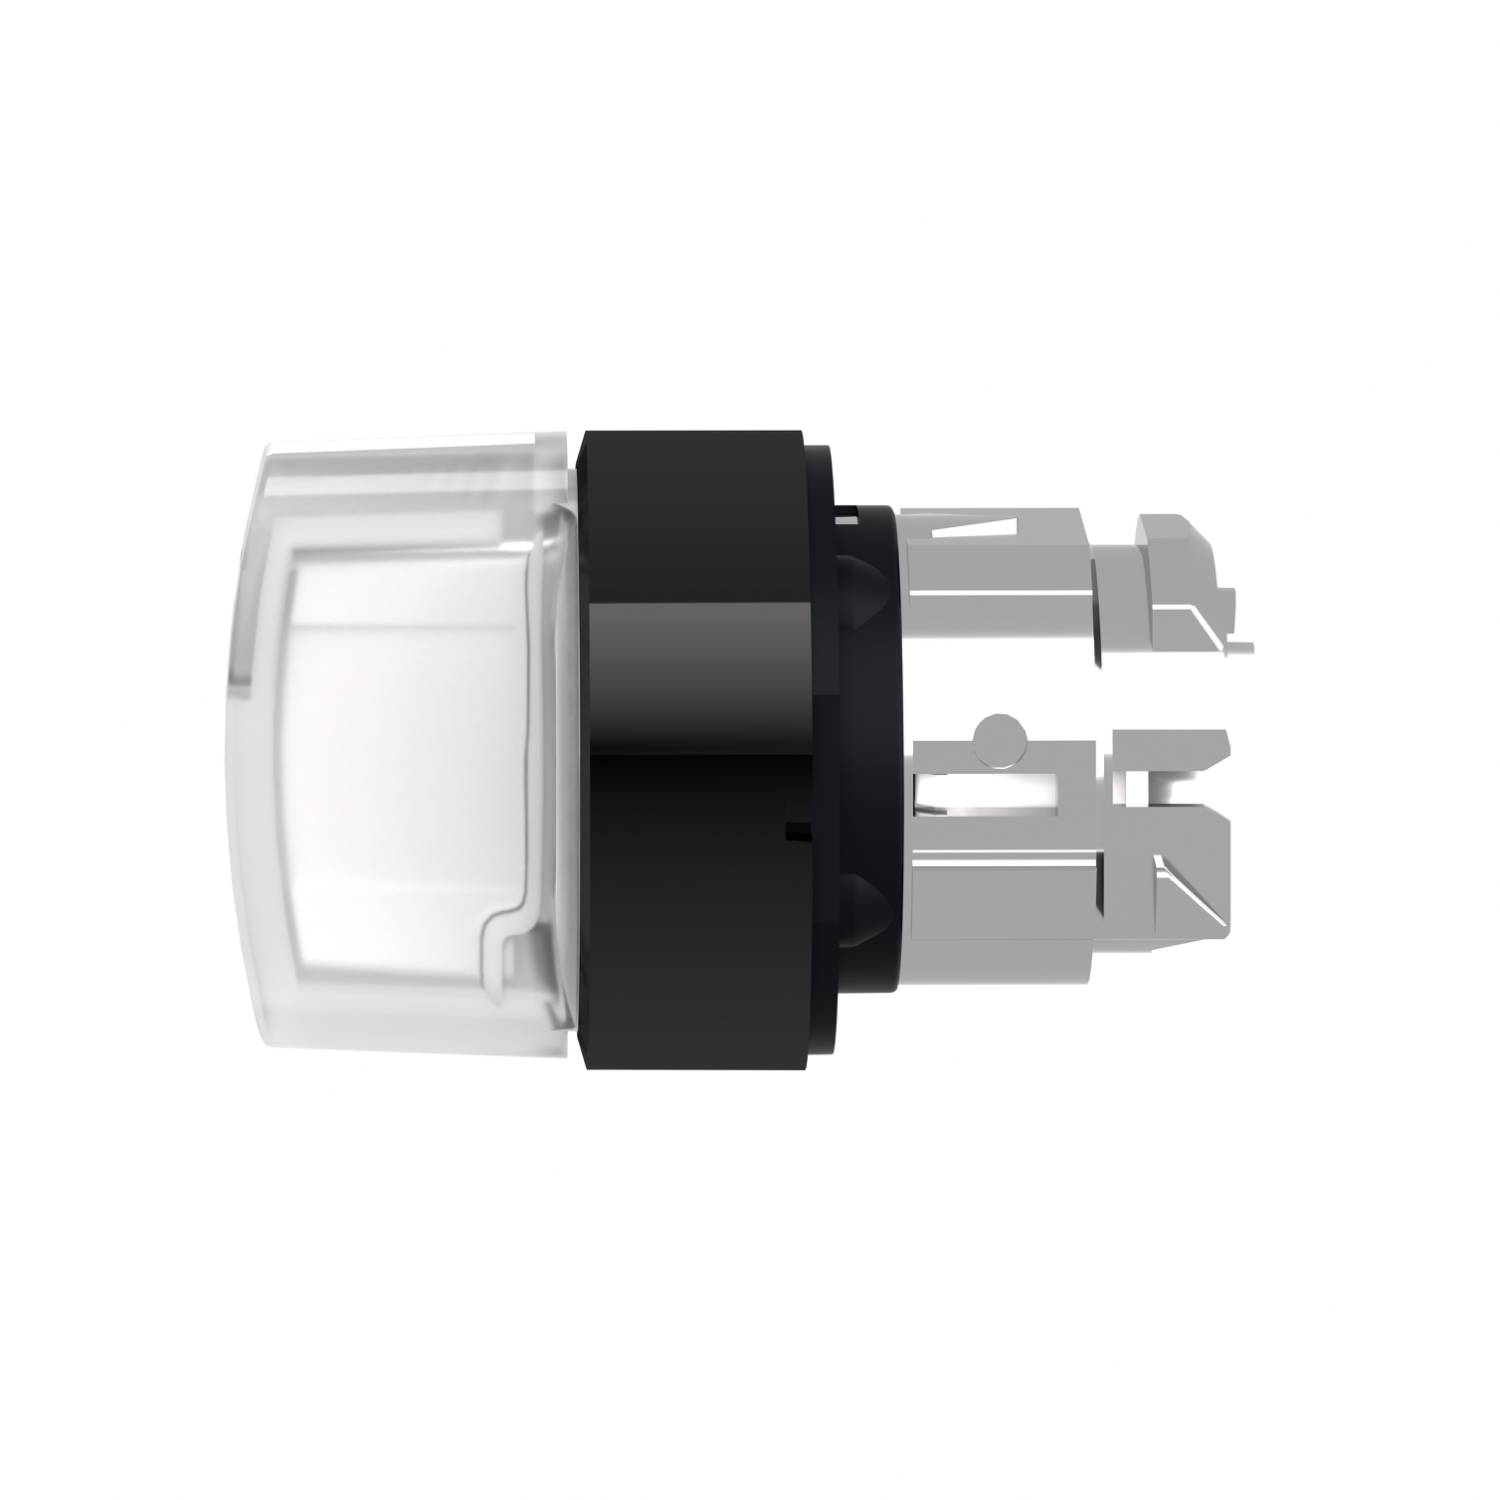 ZB4BK15137 - Head for illuminated selector switch, Harmony XB4 